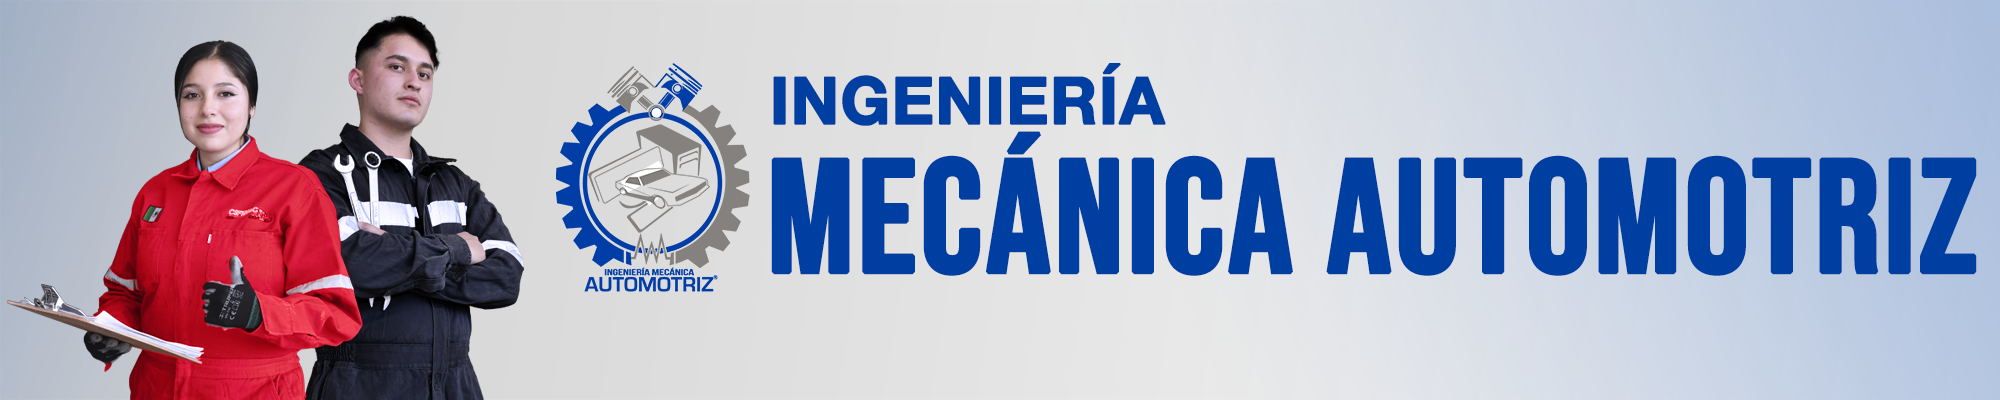 ingenieria_mecanica_automotriz